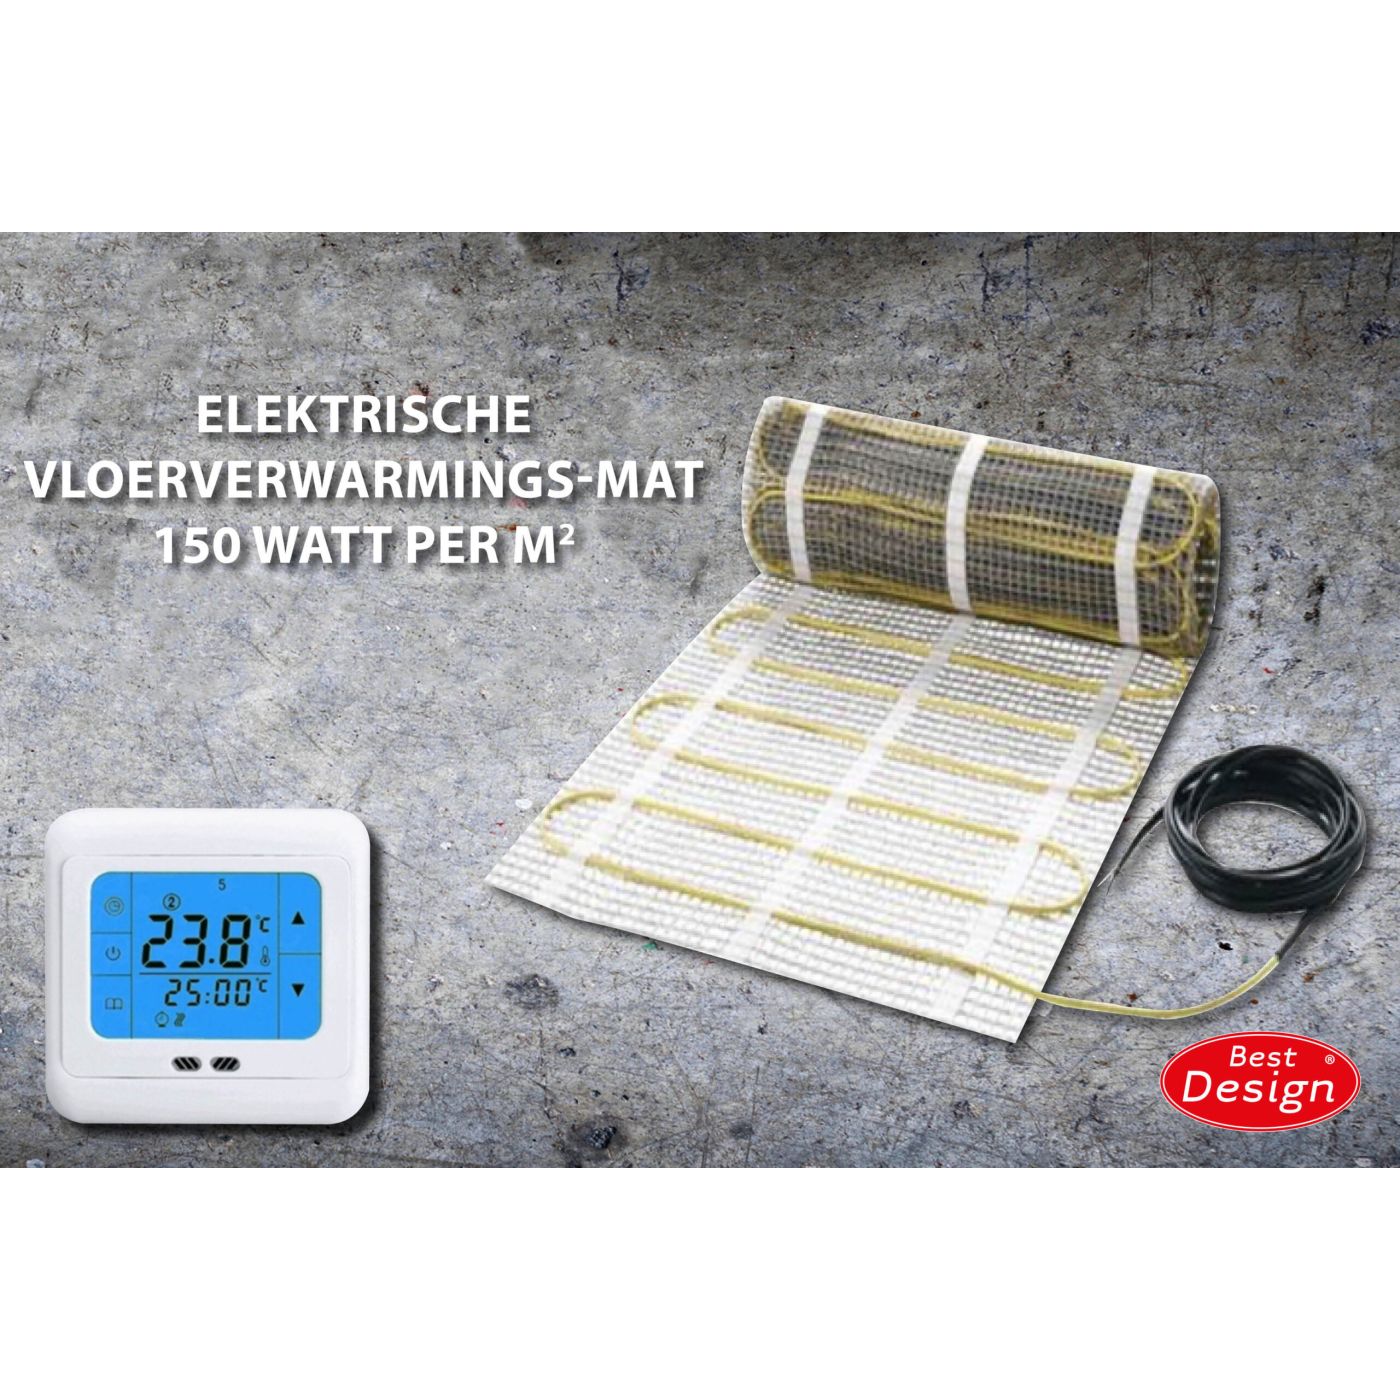 Best Design Comfort elektrische vloerverwarming mat 12.0m2